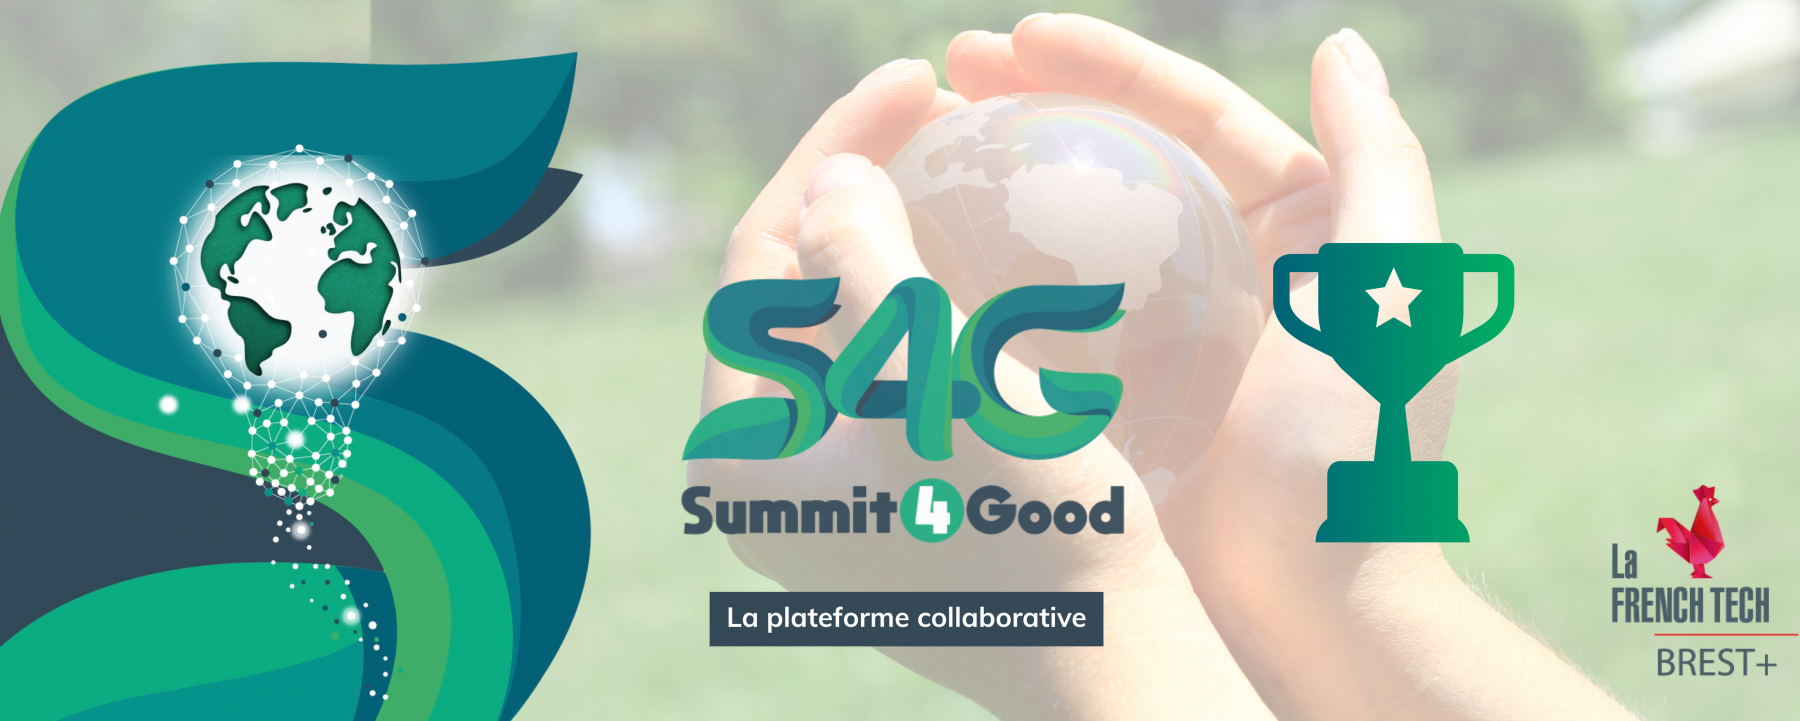 Summit4Good : Challenge de l'innovation de 30h, organisé par La French Tech à Perros-Guirec